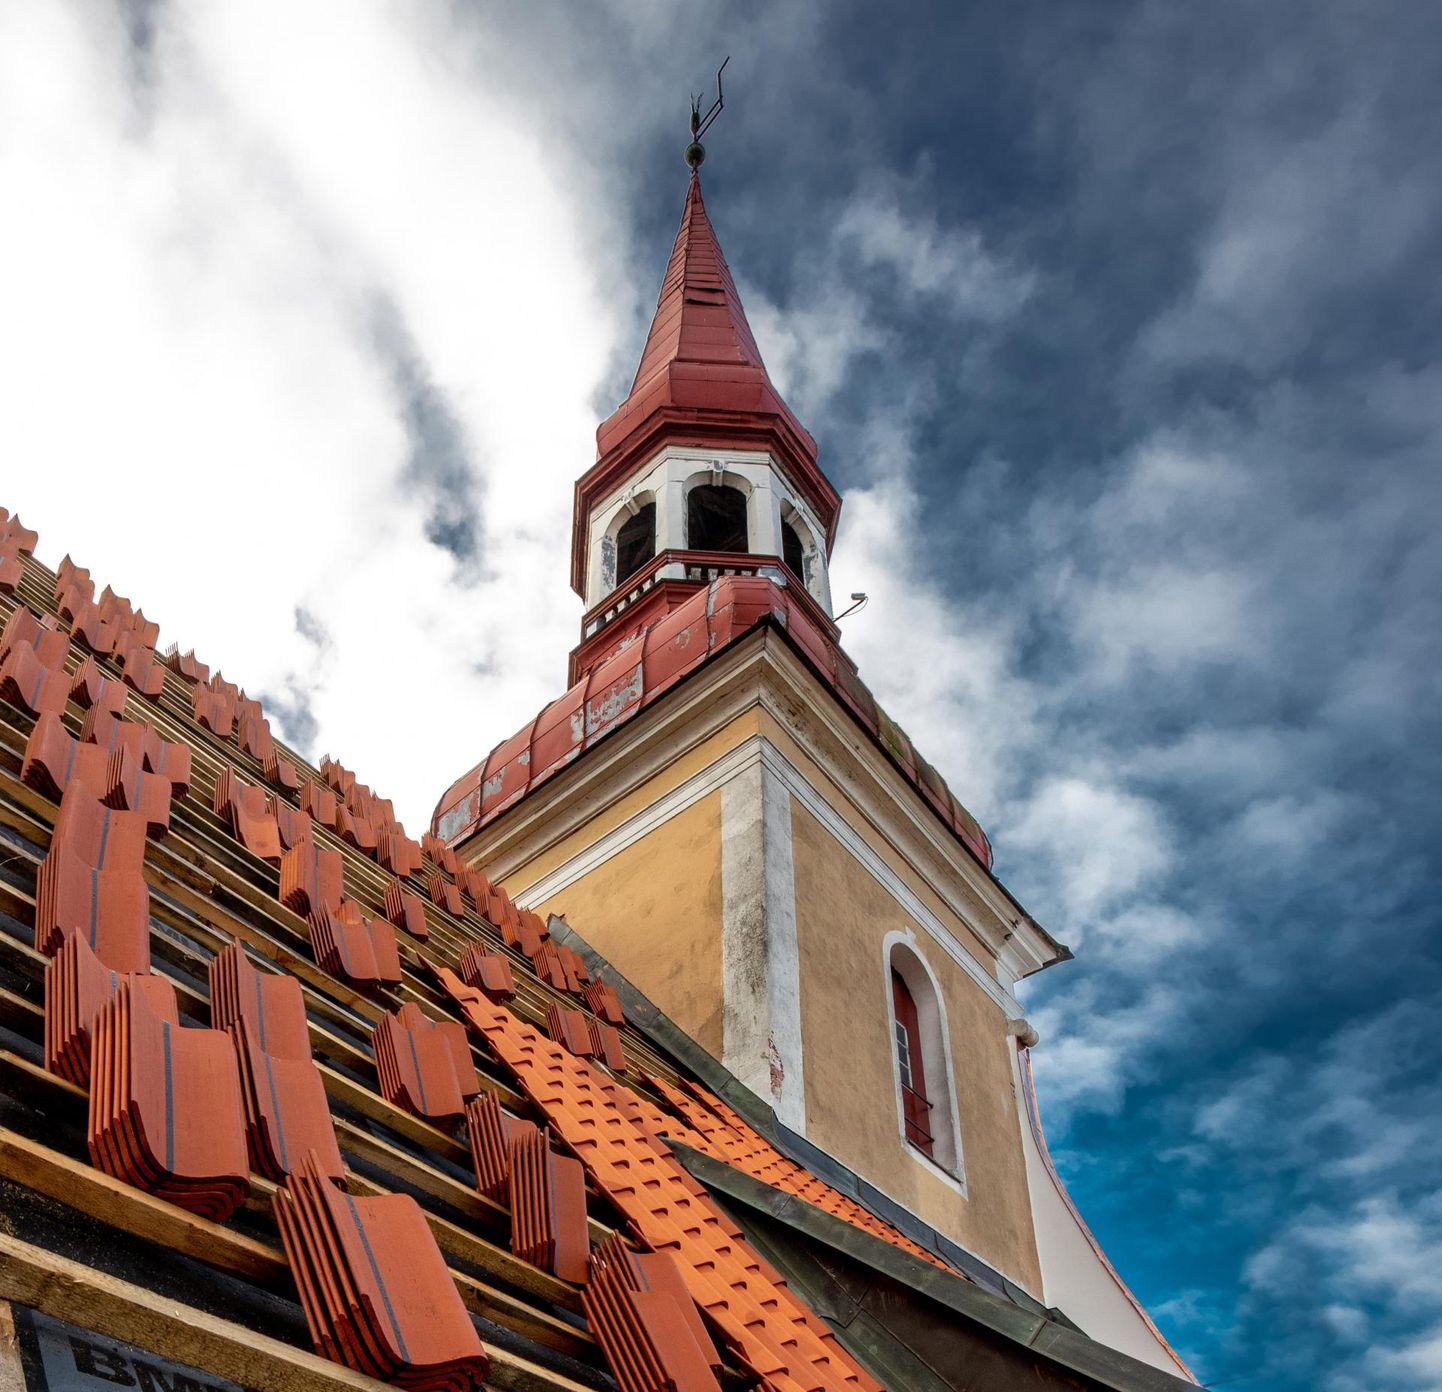 Eliisabeti kirik on Pärnu kõrgeim ehitis: 52,5 meetrit.